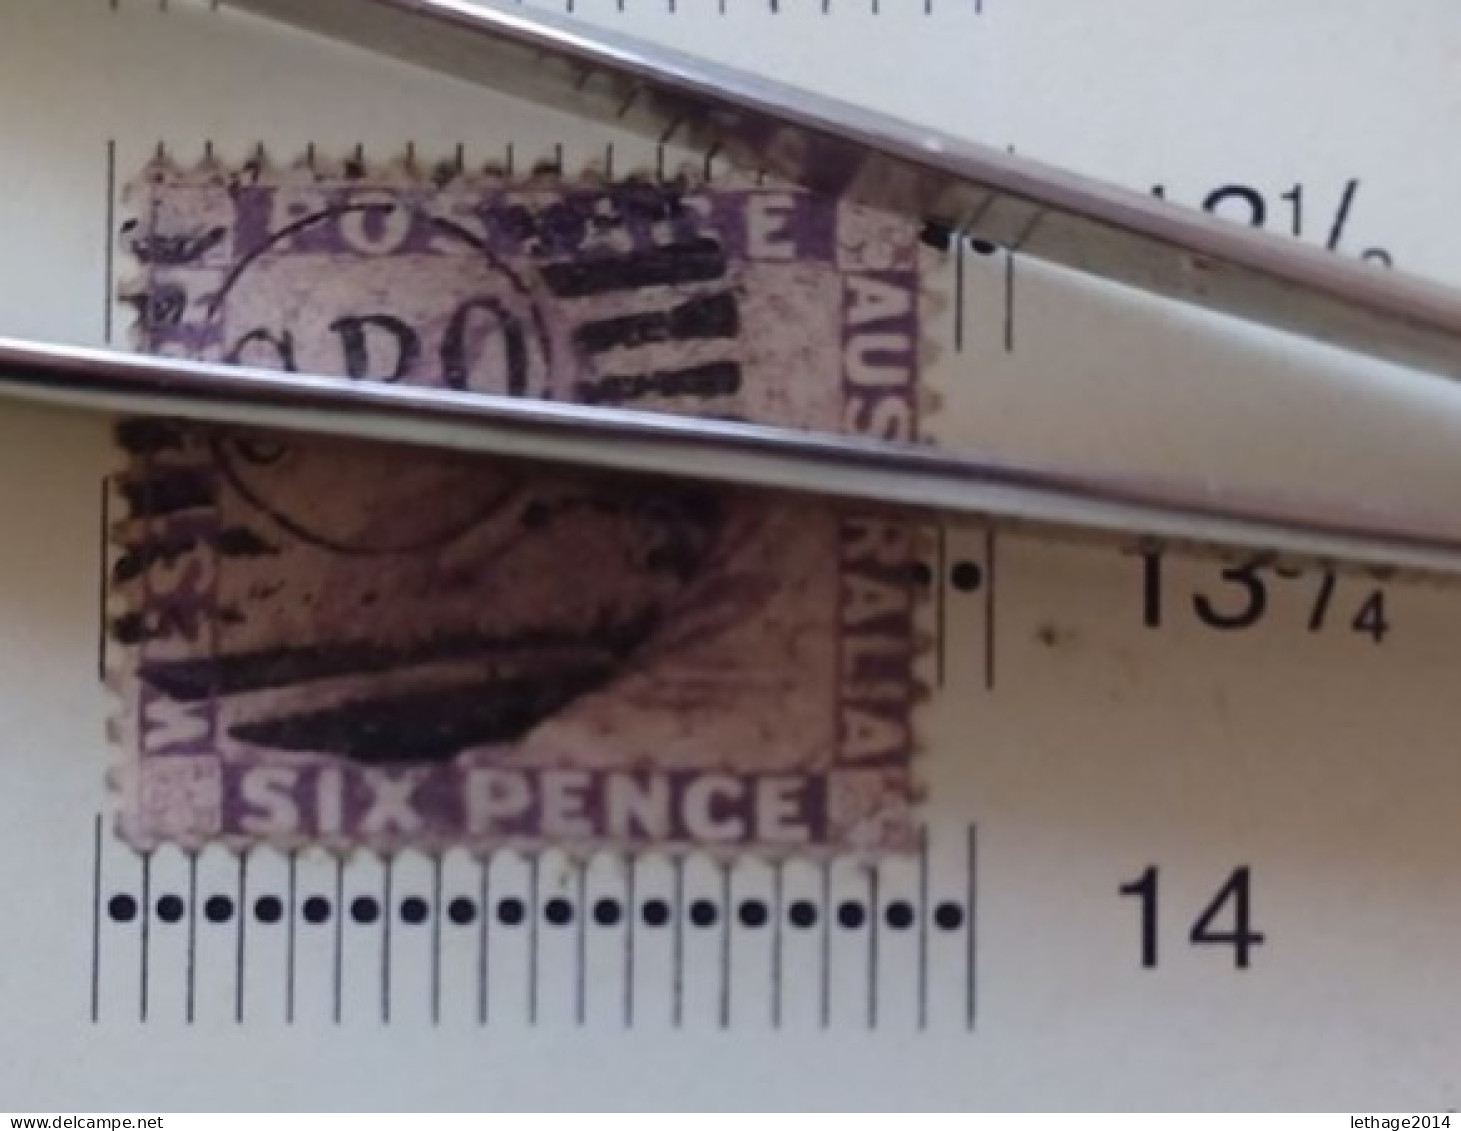 WESTERN AUSTRALIA 1865 SWAN CAT GIBBONS N 59 WMK CROWN CC PERF 14 - Used Stamps